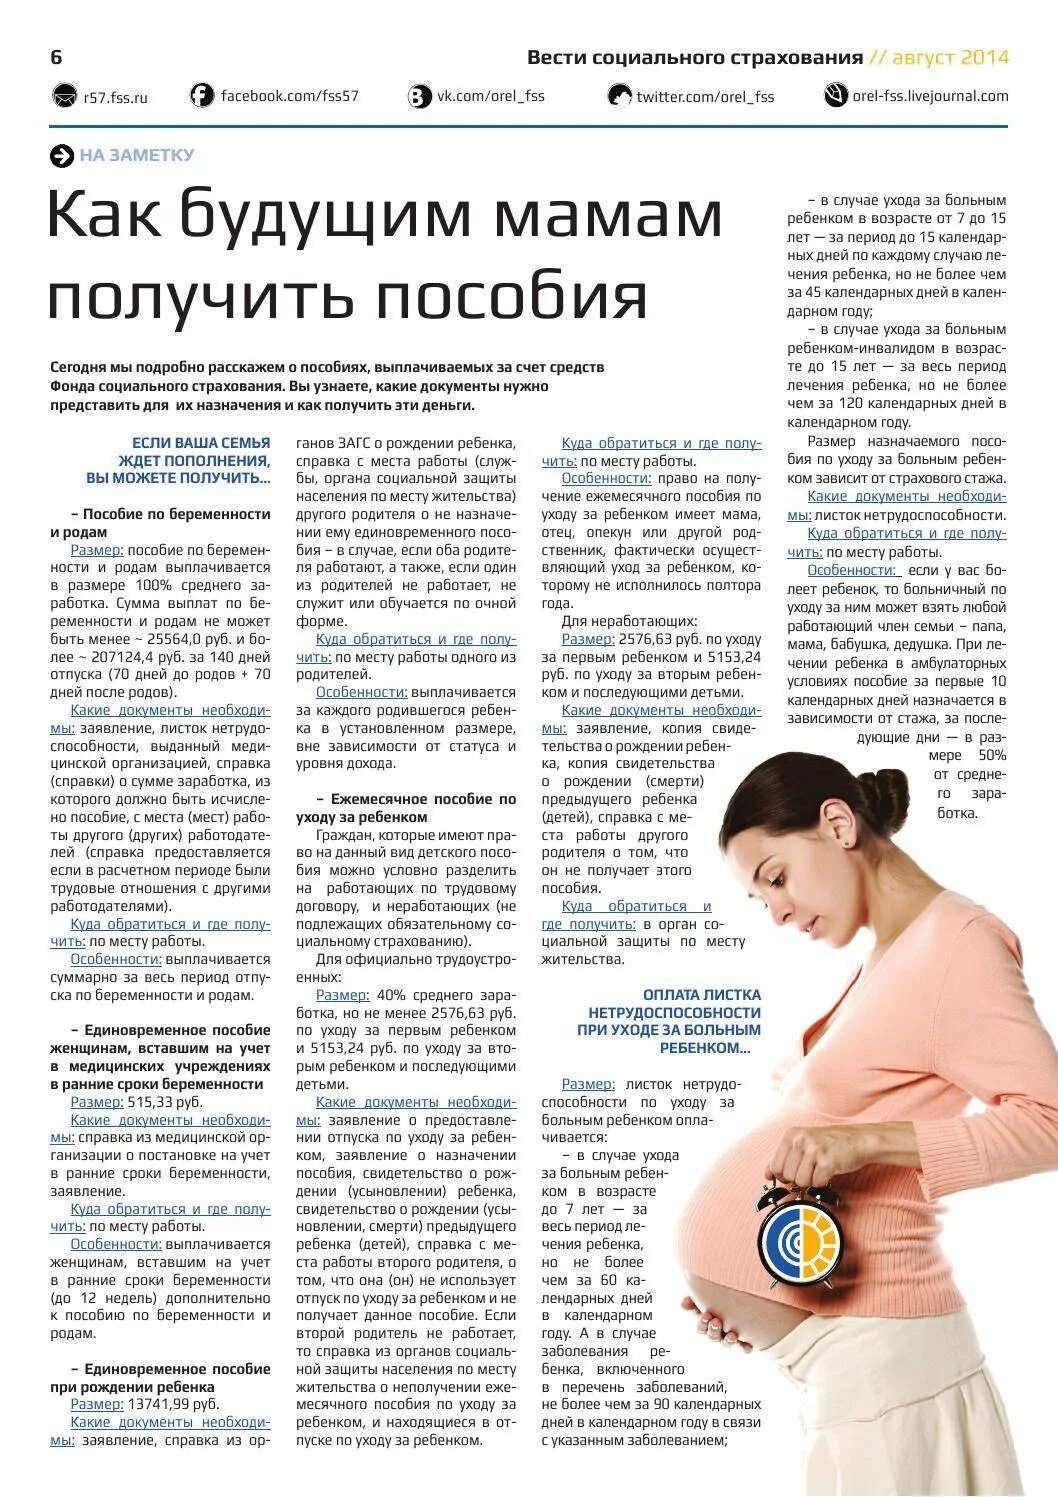 Выплаты по беременности и родам. Пособия при беременности. Пособие для беременных женщин. Выплаты беременным женщинам.